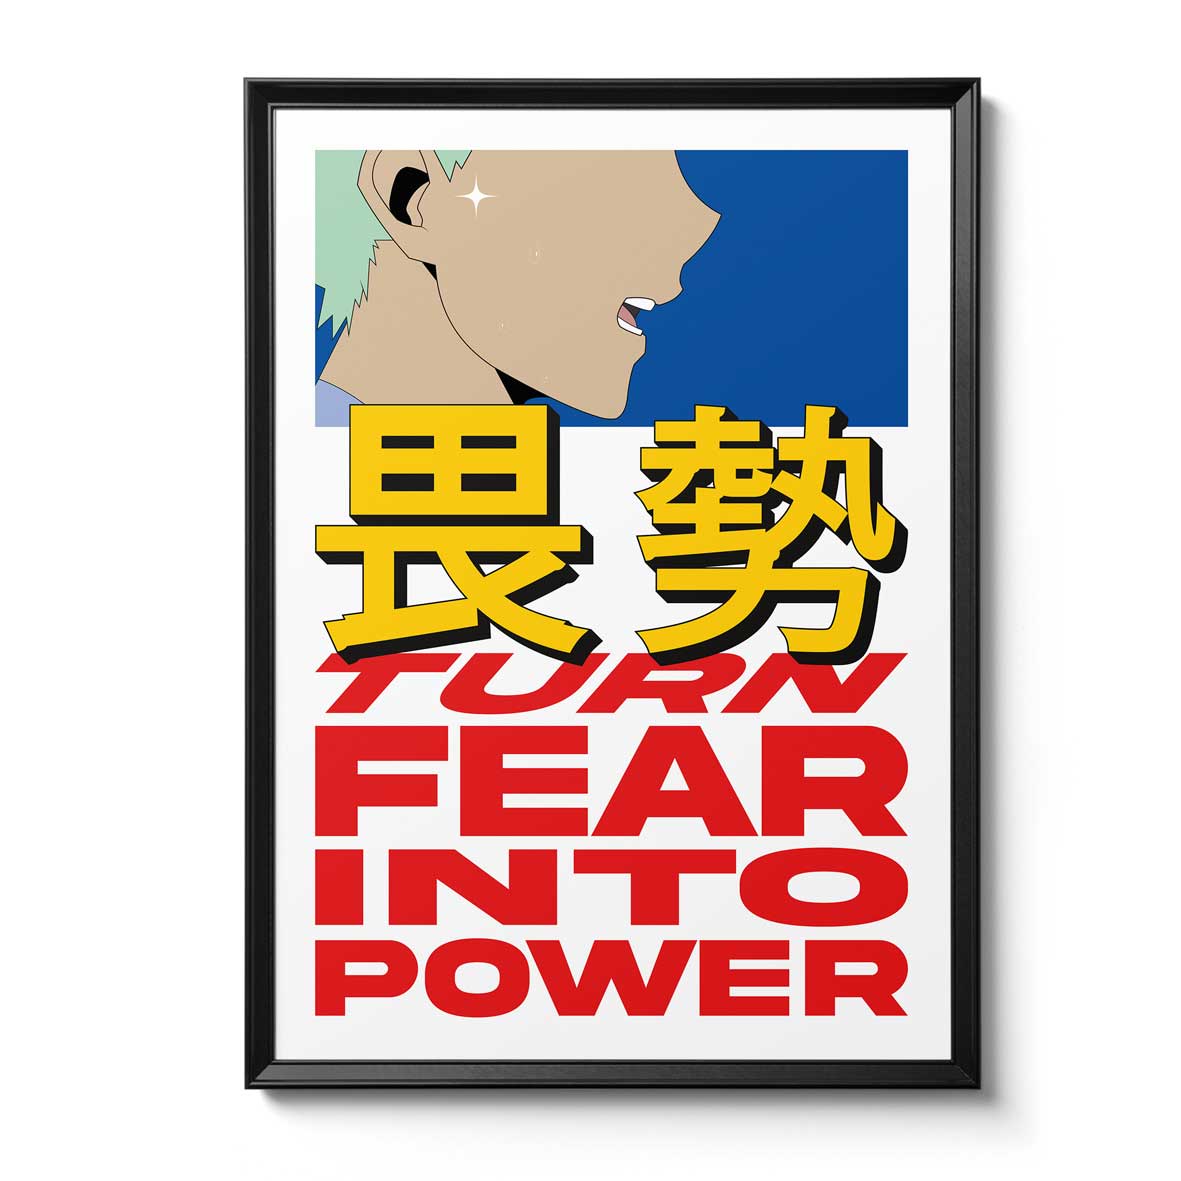 Fine art print "FEAR TO POWER" 